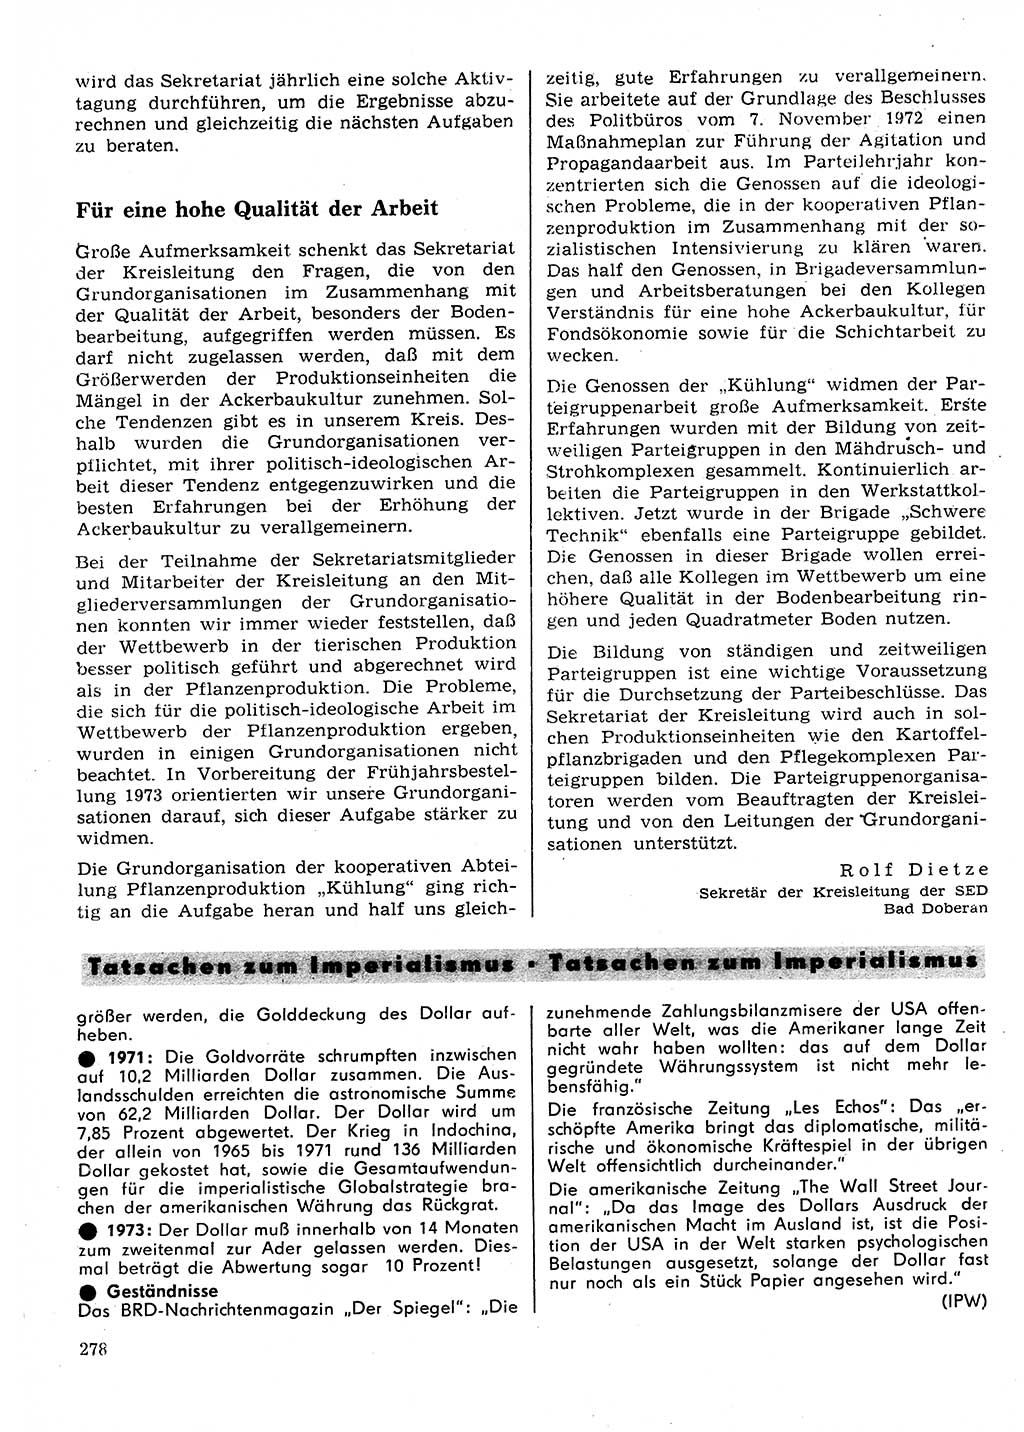 Neuer Weg (NW), Organ des Zentralkomitees (ZK) der SED (Sozialistische Einheitspartei Deutschlands) für Fragen des Parteilebens, 28. Jahrgang [Deutsche Demokratische Republik (DDR)] 1973, Seite 278 (NW ZK SED DDR 1973, S. 278)